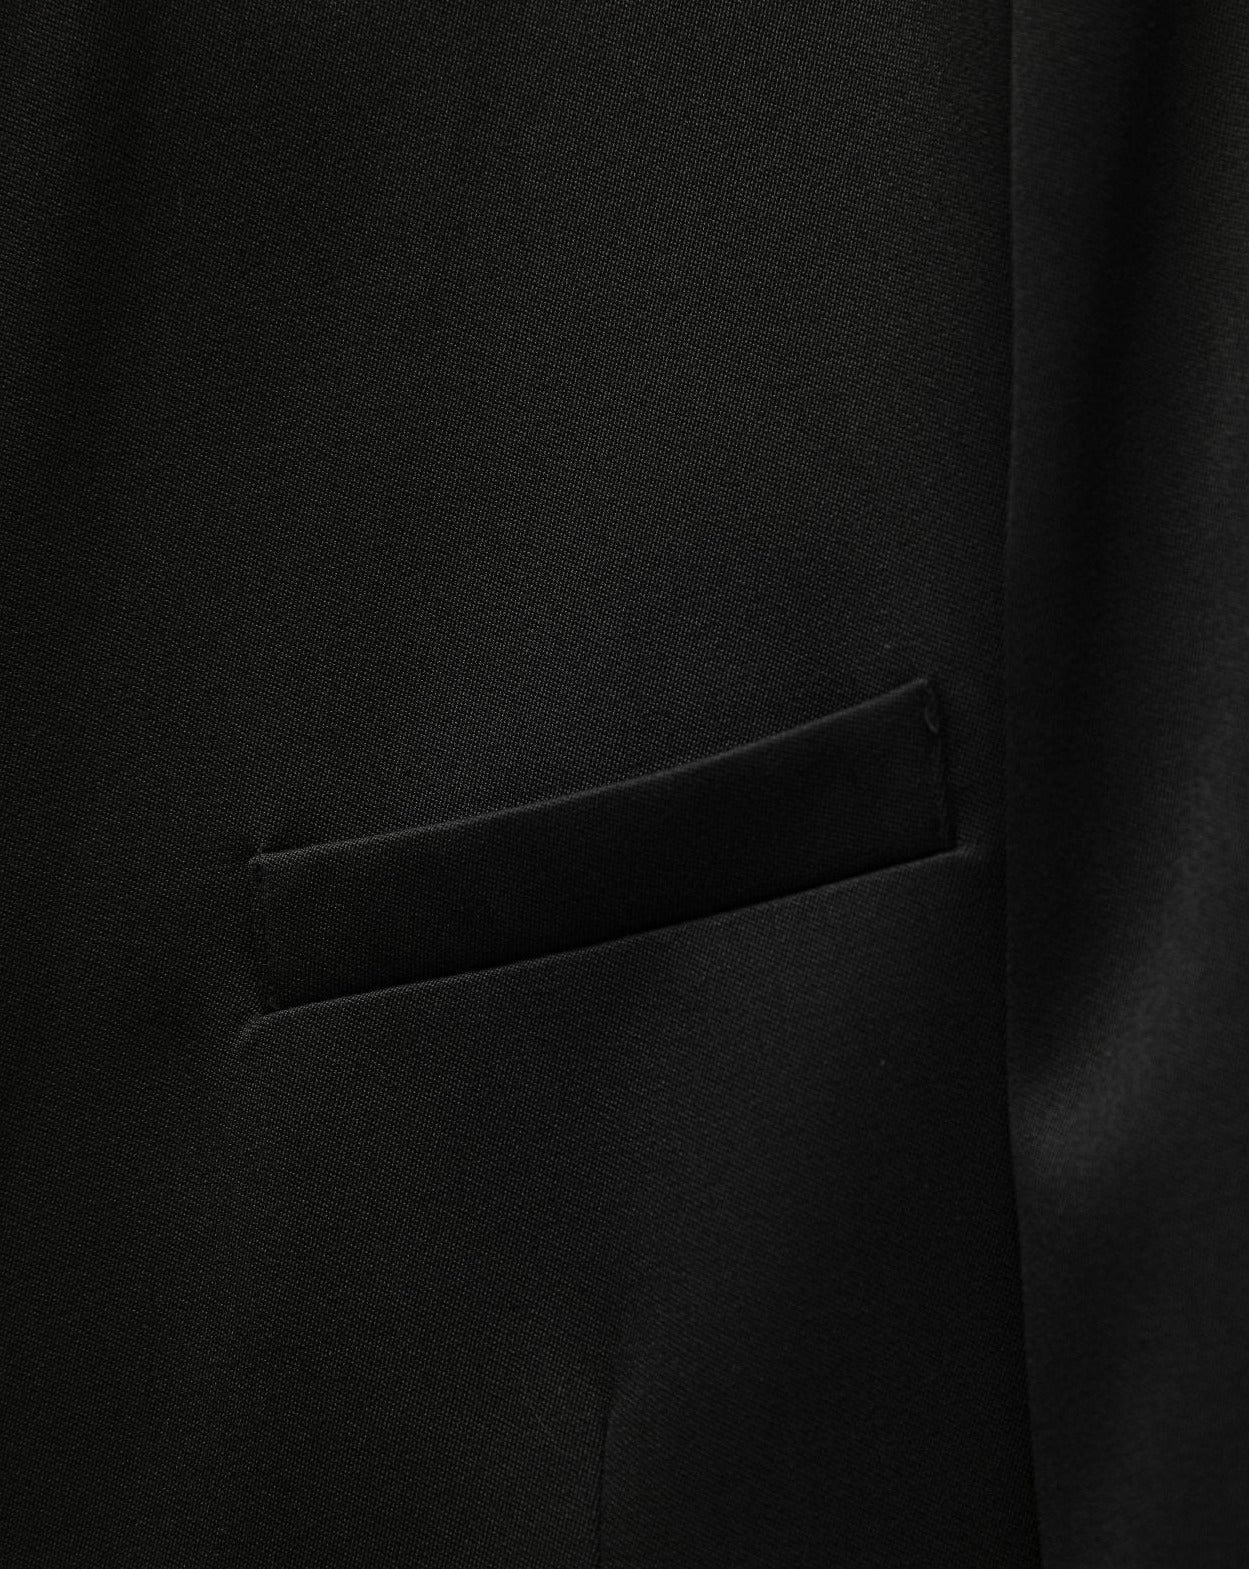 [PAPERMOON] SS / Satin Peaked Lapel Oversized Tuxedo Blazer